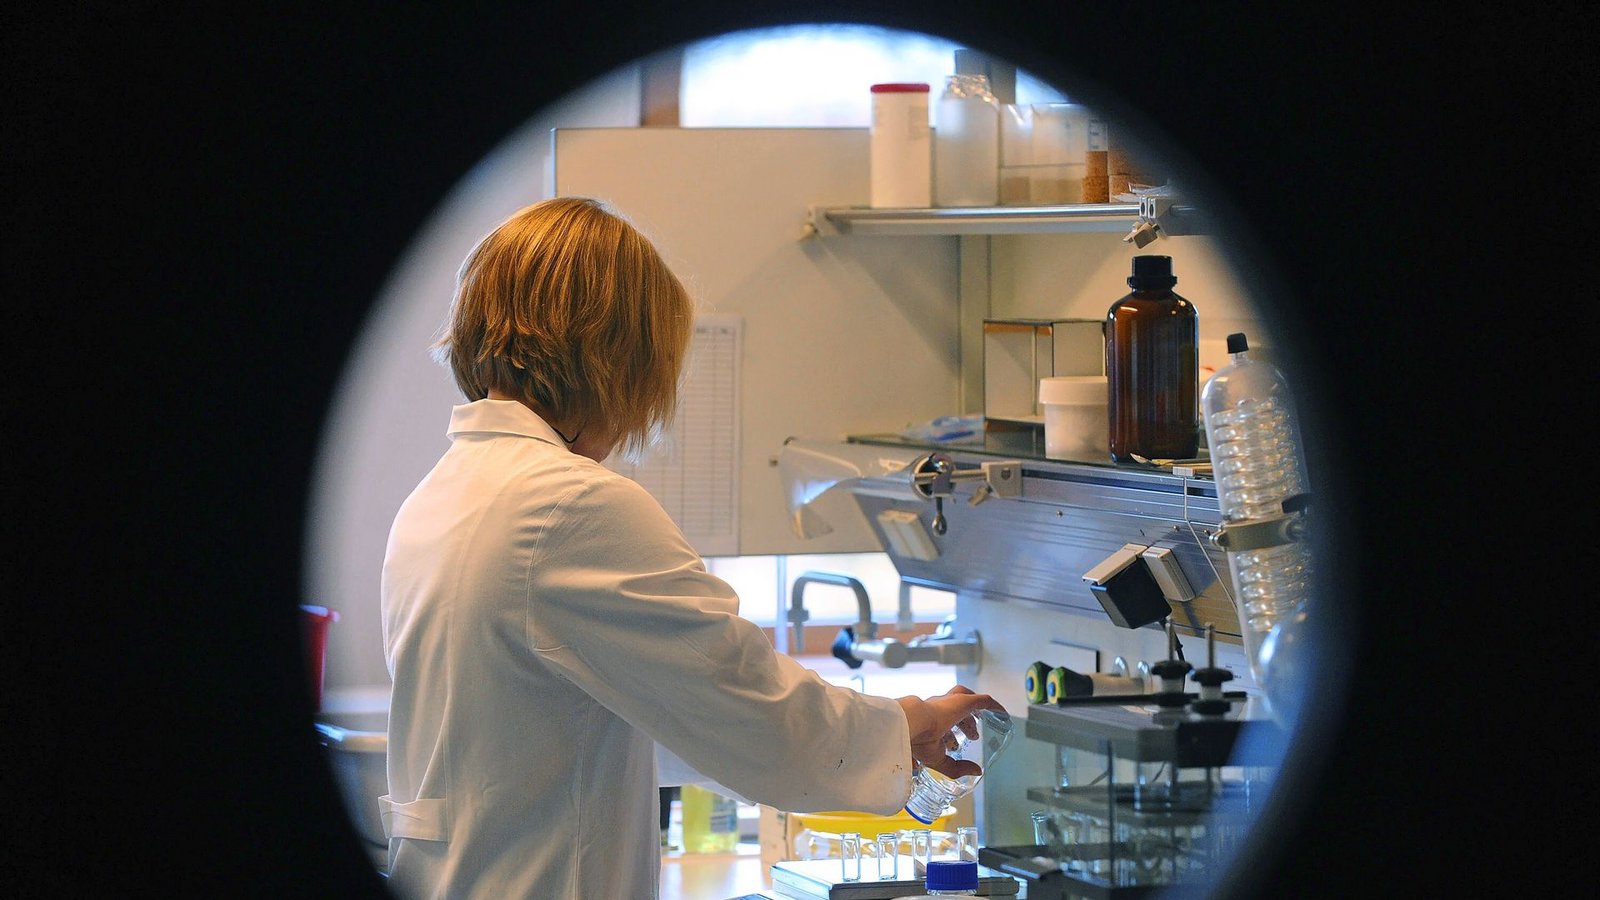 Garmus’ Protagonistin,  eine Chemikerin, versucht Karriere am  Forschungsinstitut Hastings zu machen – trotz Widerstände.Foto: dpa/Ingo Wagner